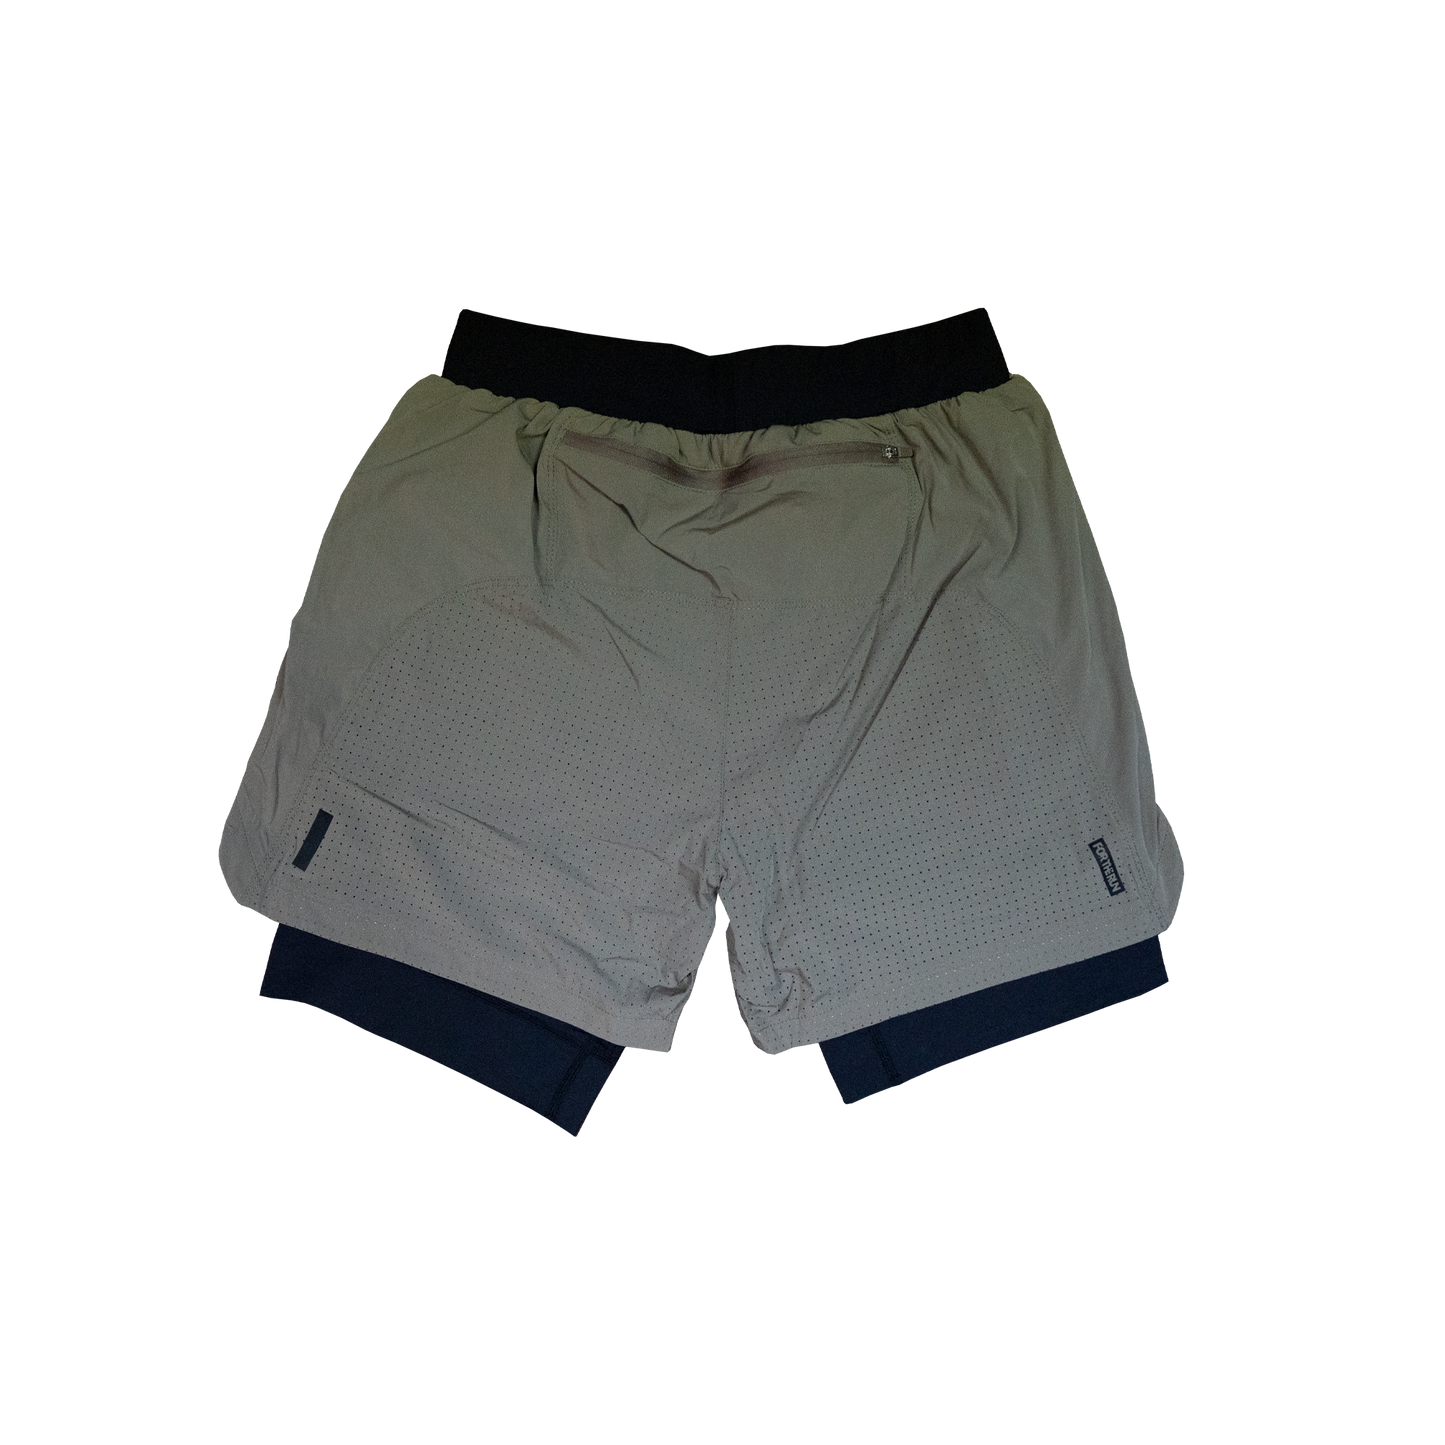 Everhart V- 5" 2-in-1 Shorts, Men's - Olive